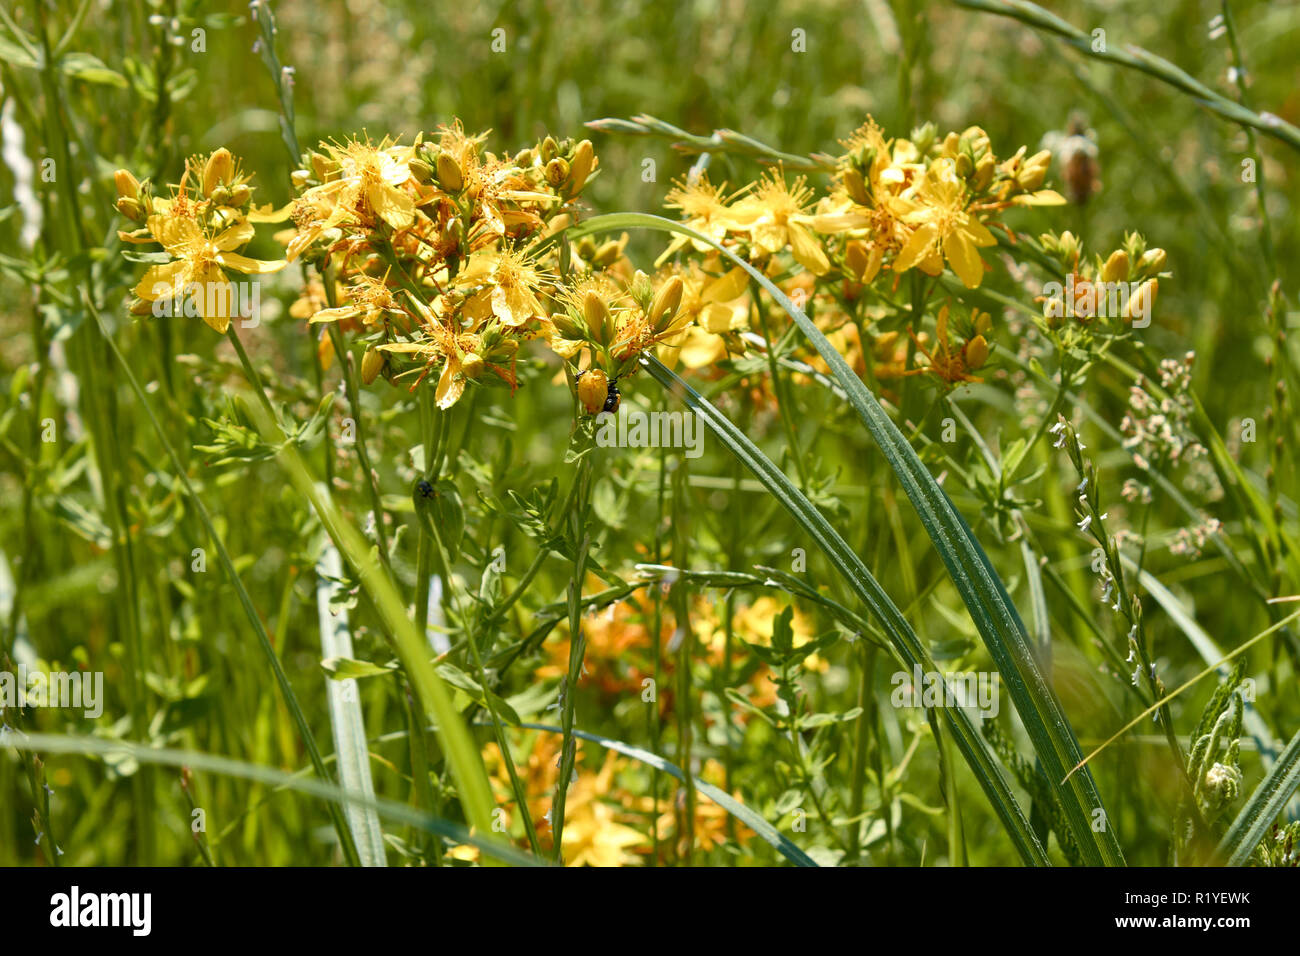 Fioritura delle piante di Hypericum perforatum o erba di San Giovanni sui prati vicino alla luce del sole Foto Stock